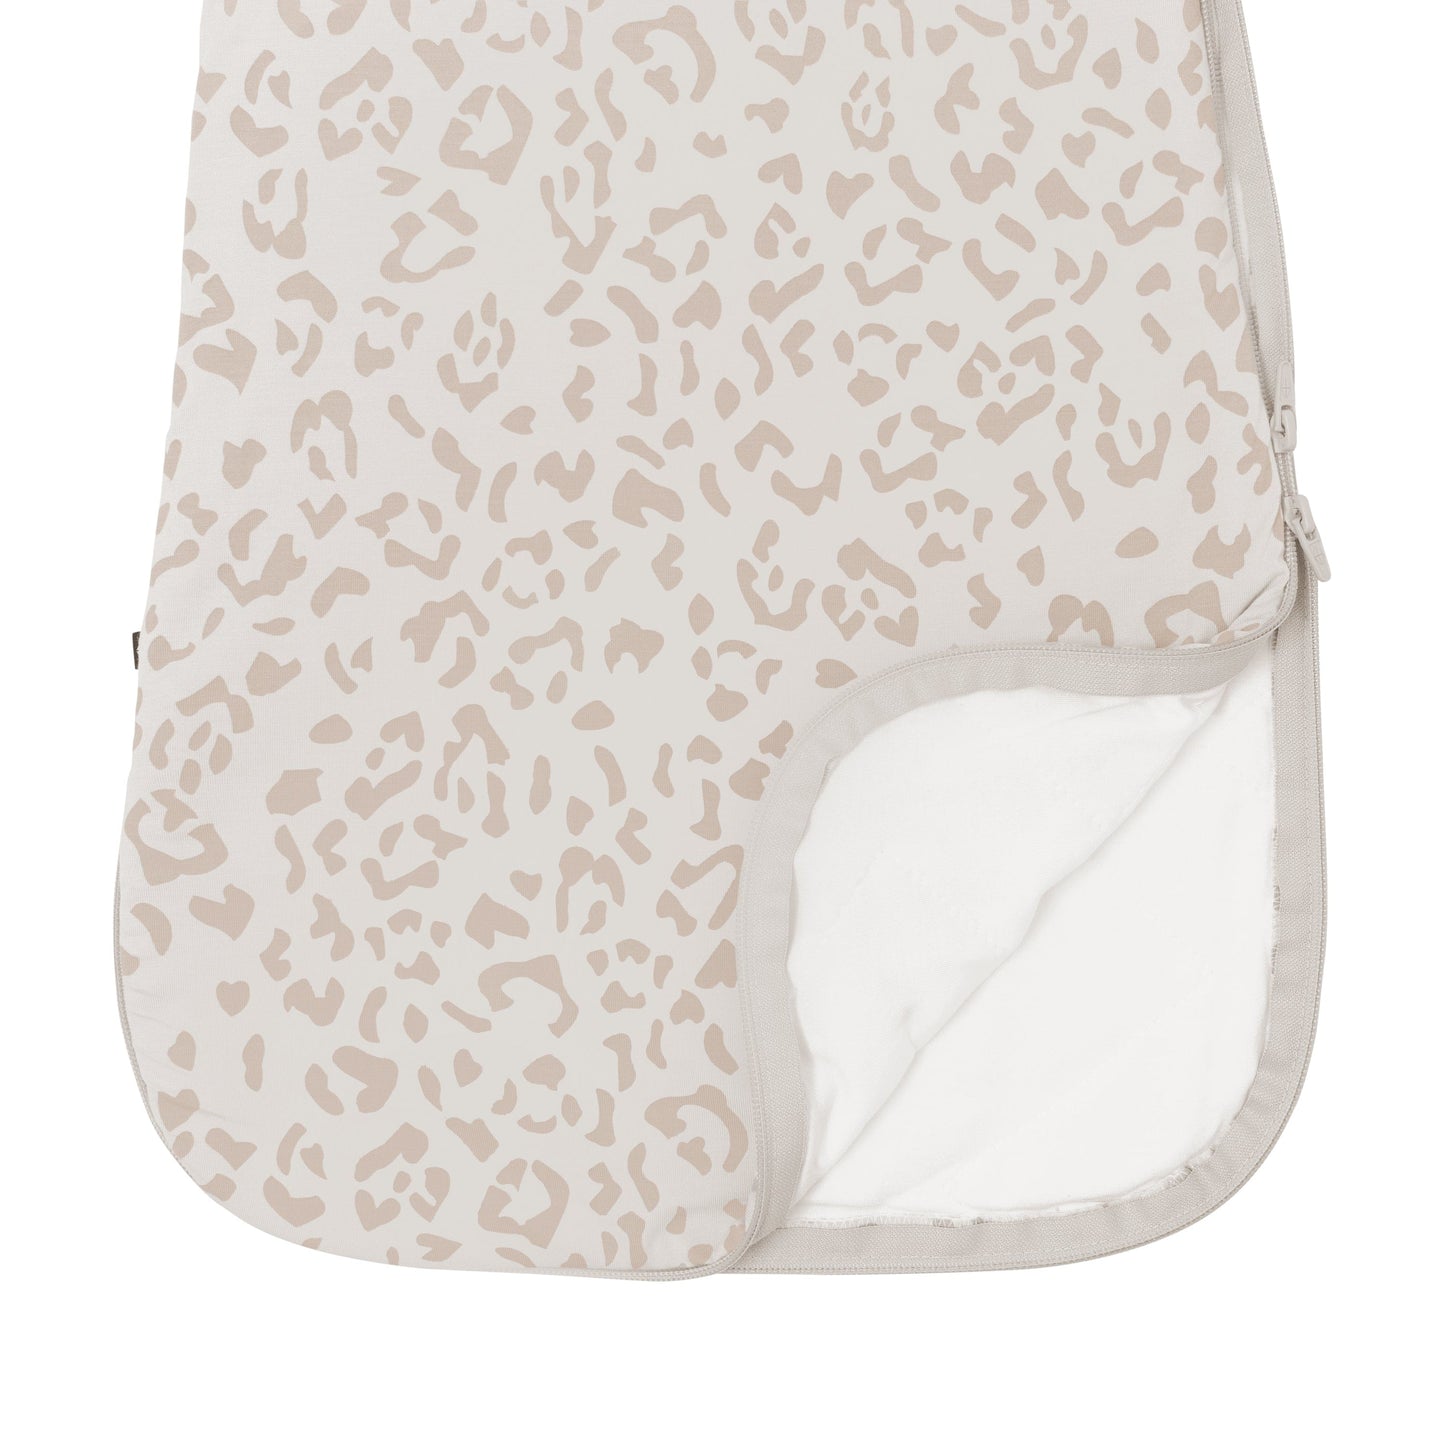 Sleep Bag 1.0 in Oat Leopard  - Doodlebug's Children's Boutique